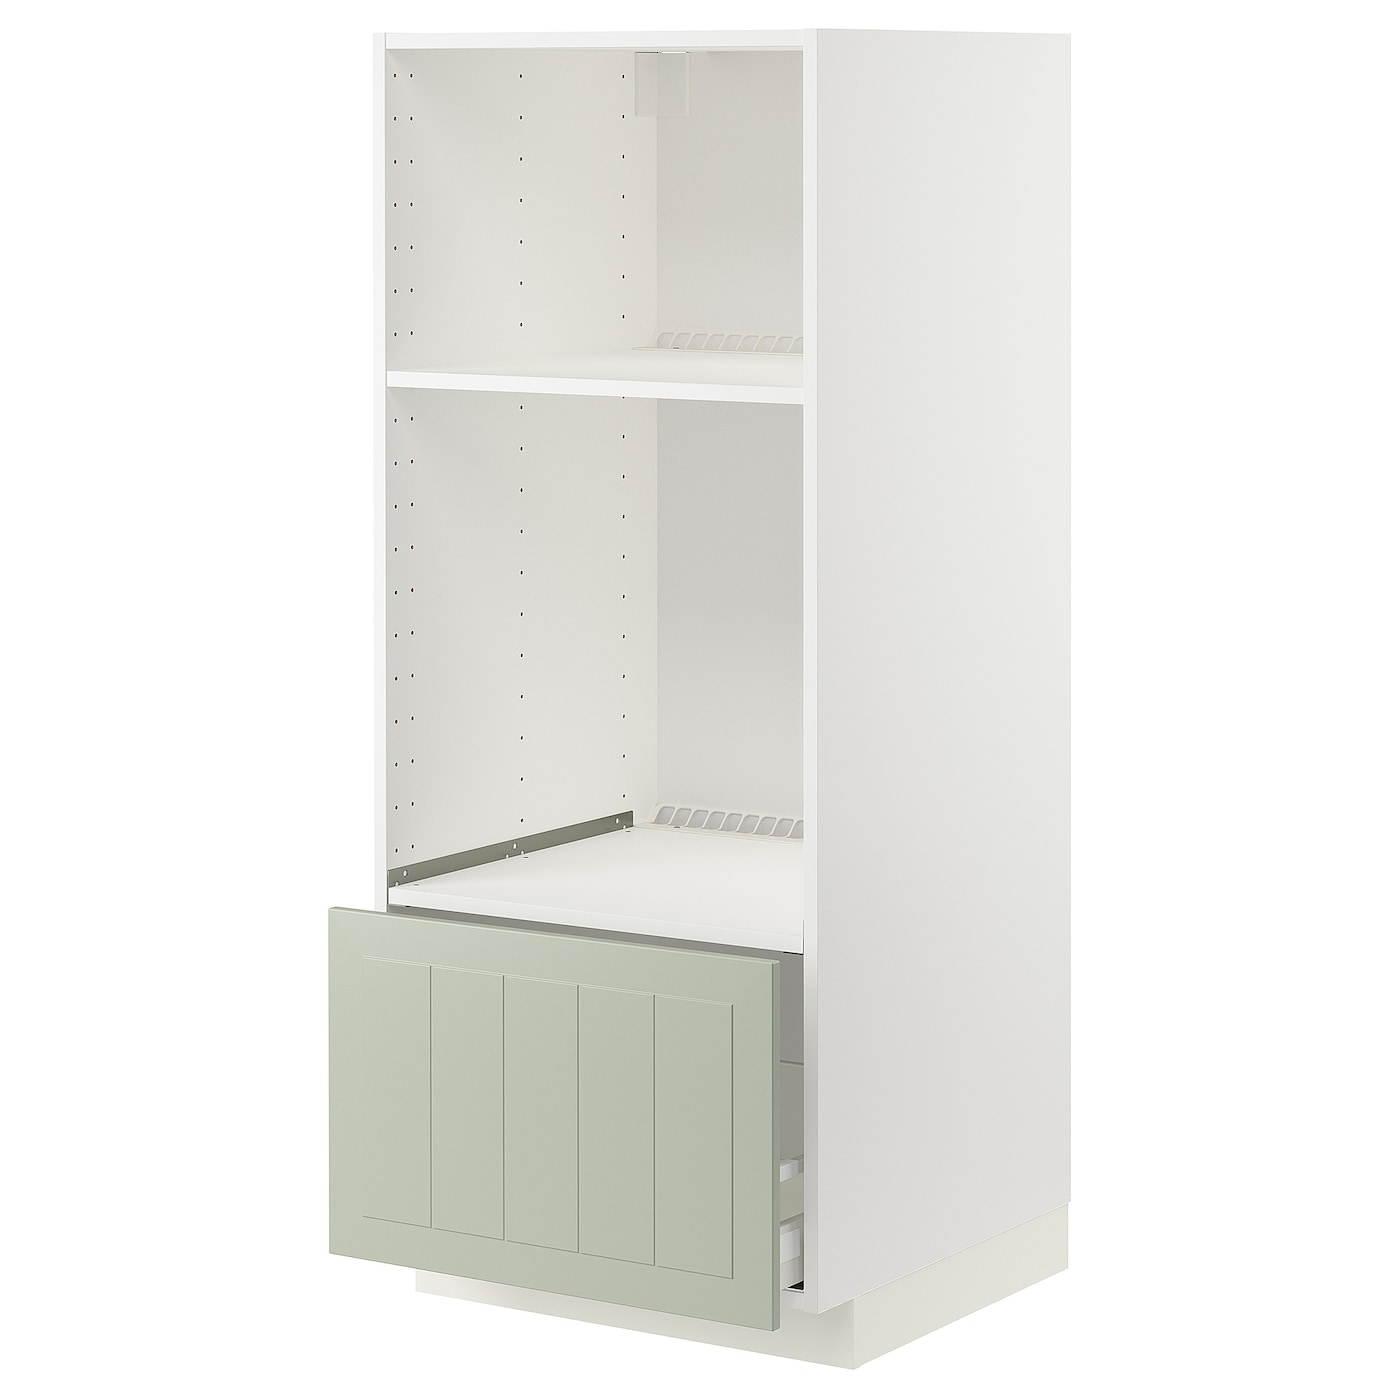 Напольный шкаф  - IKEA METOD MAXIMERA, 148x61,9x60см, белый/светло-зеленый, МЕТОД МАКСИМЕРА ИКЕА